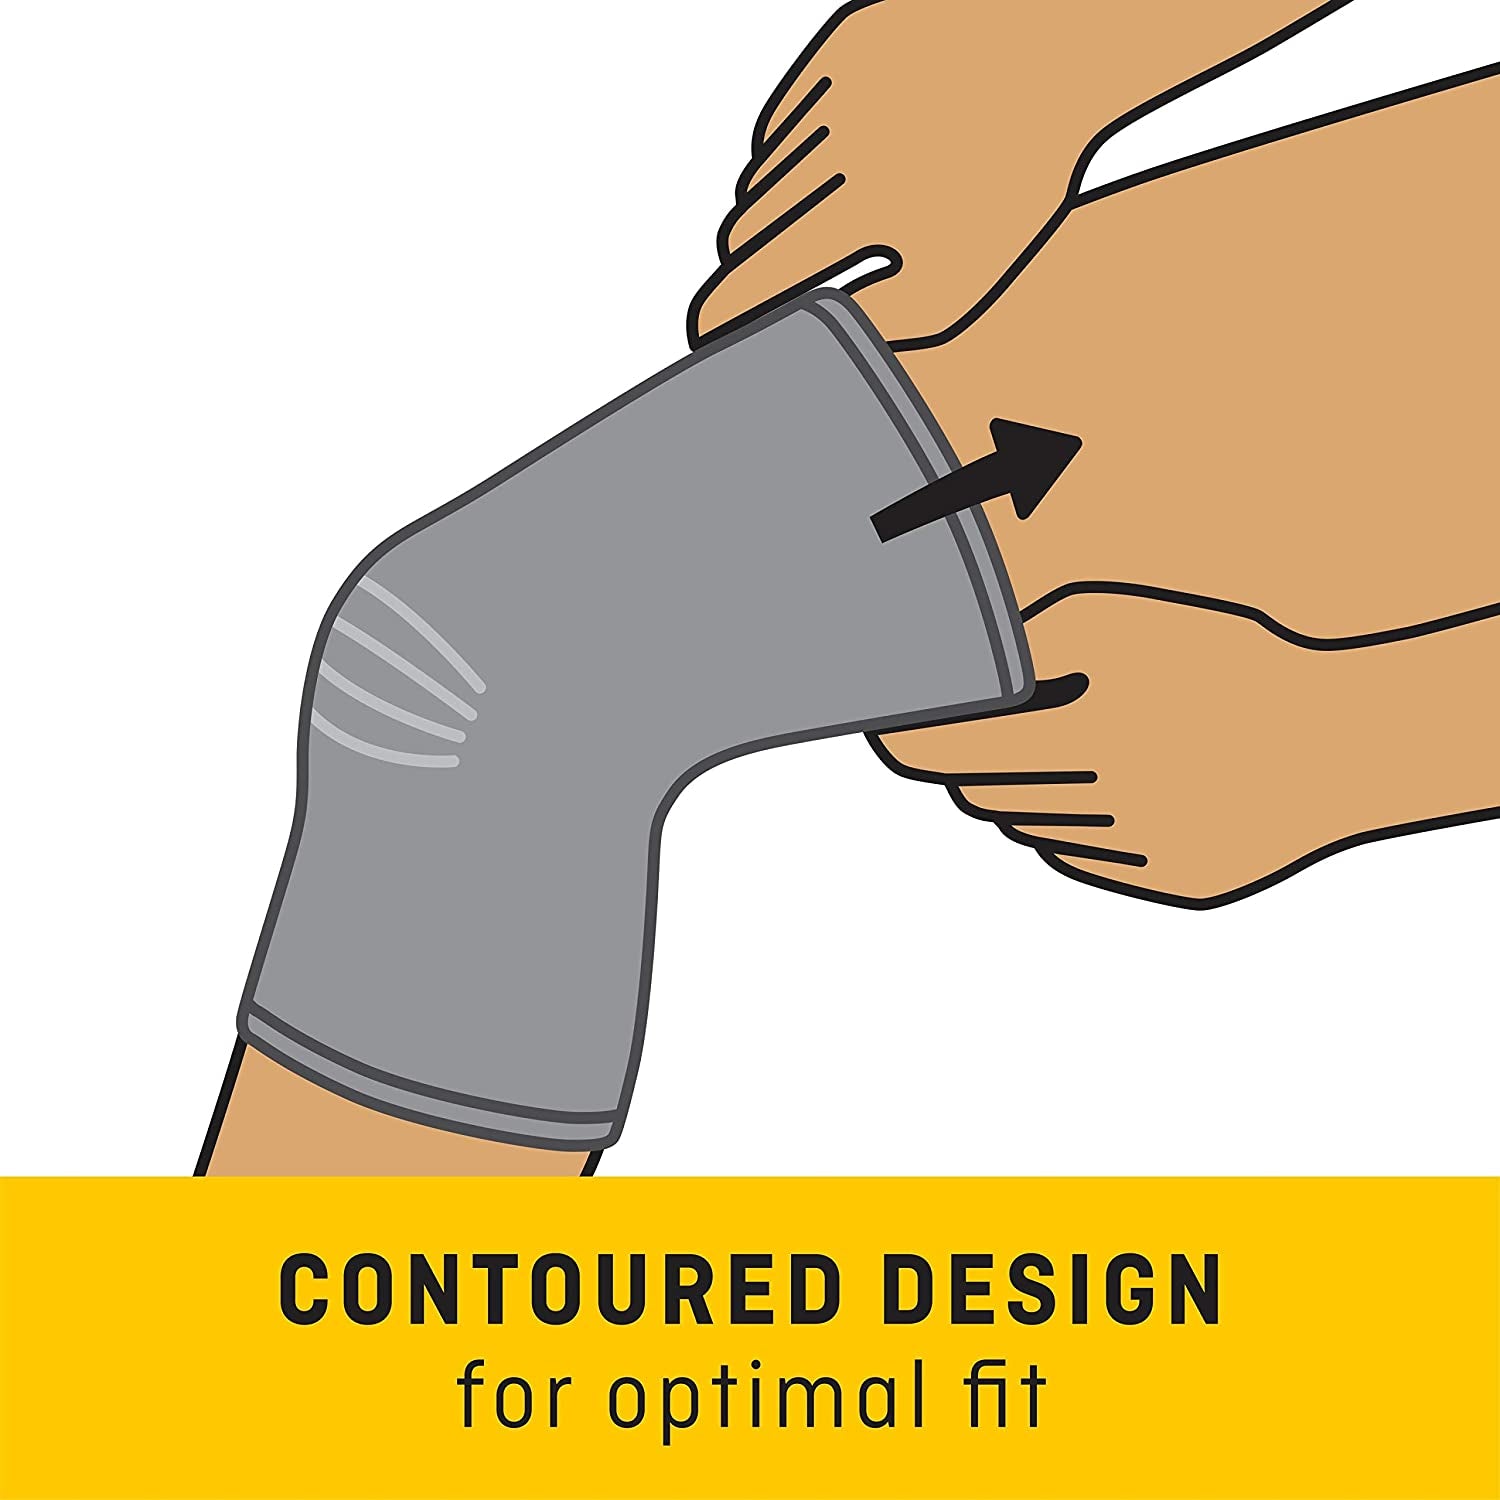 Futuro Comfort Lift Knee Support, Medium, 1 Count